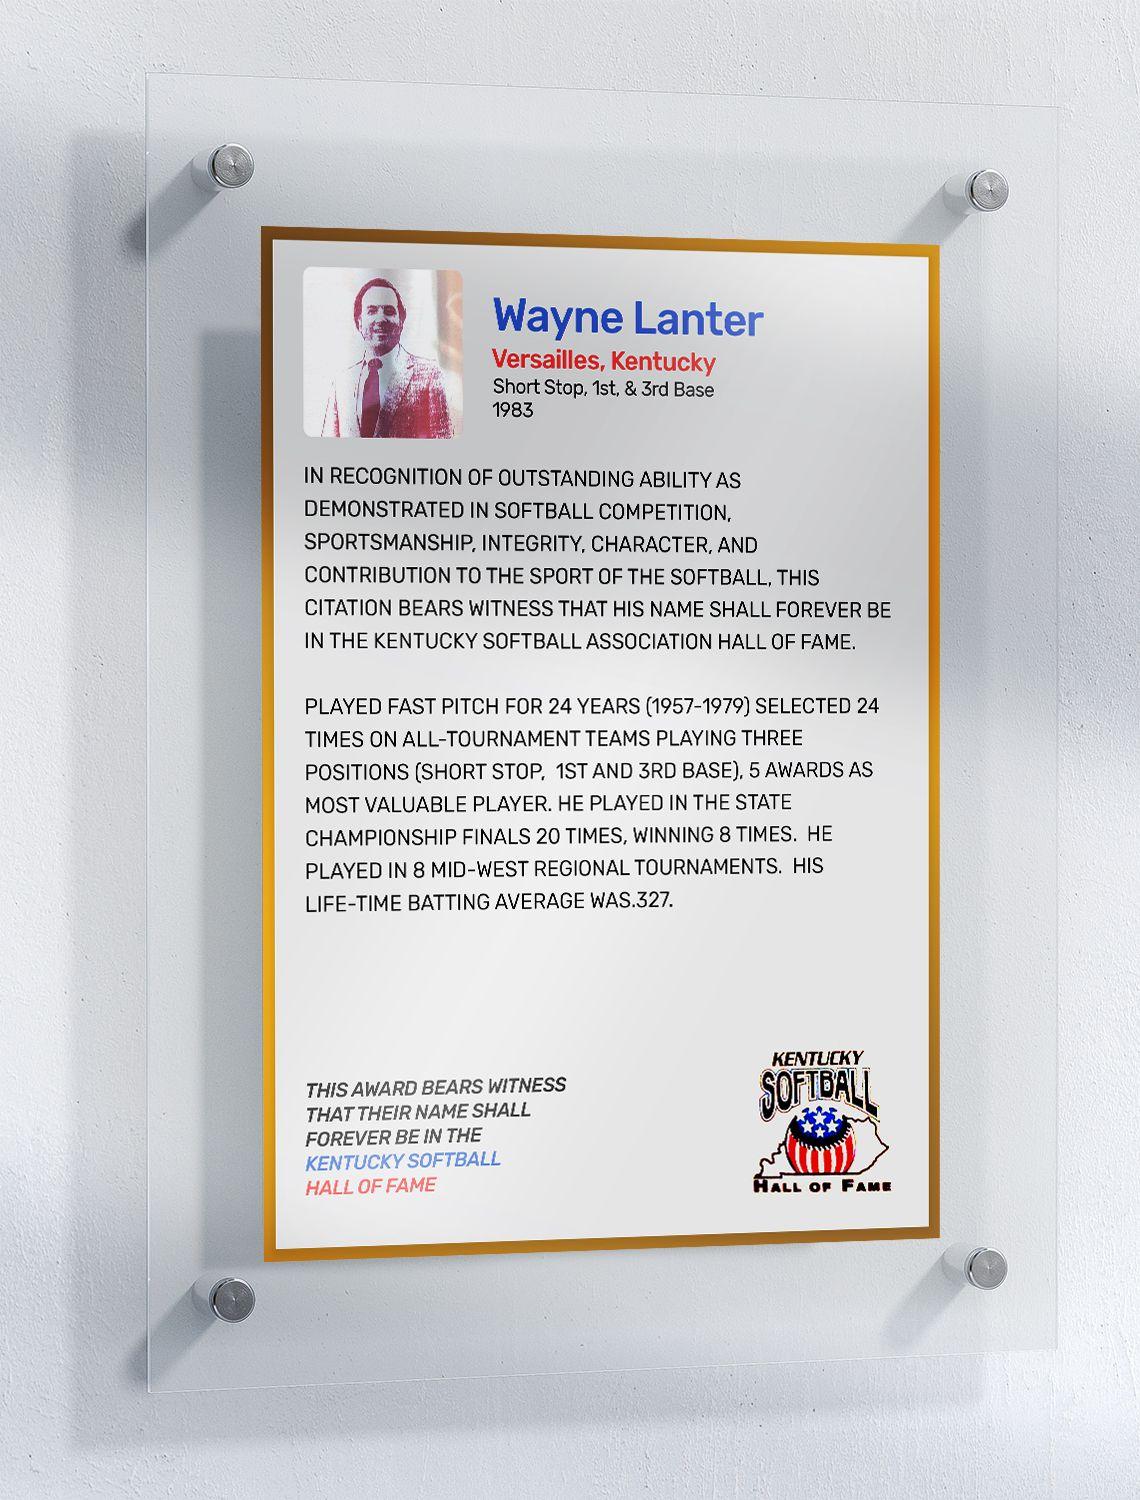 Lanter, Wayne